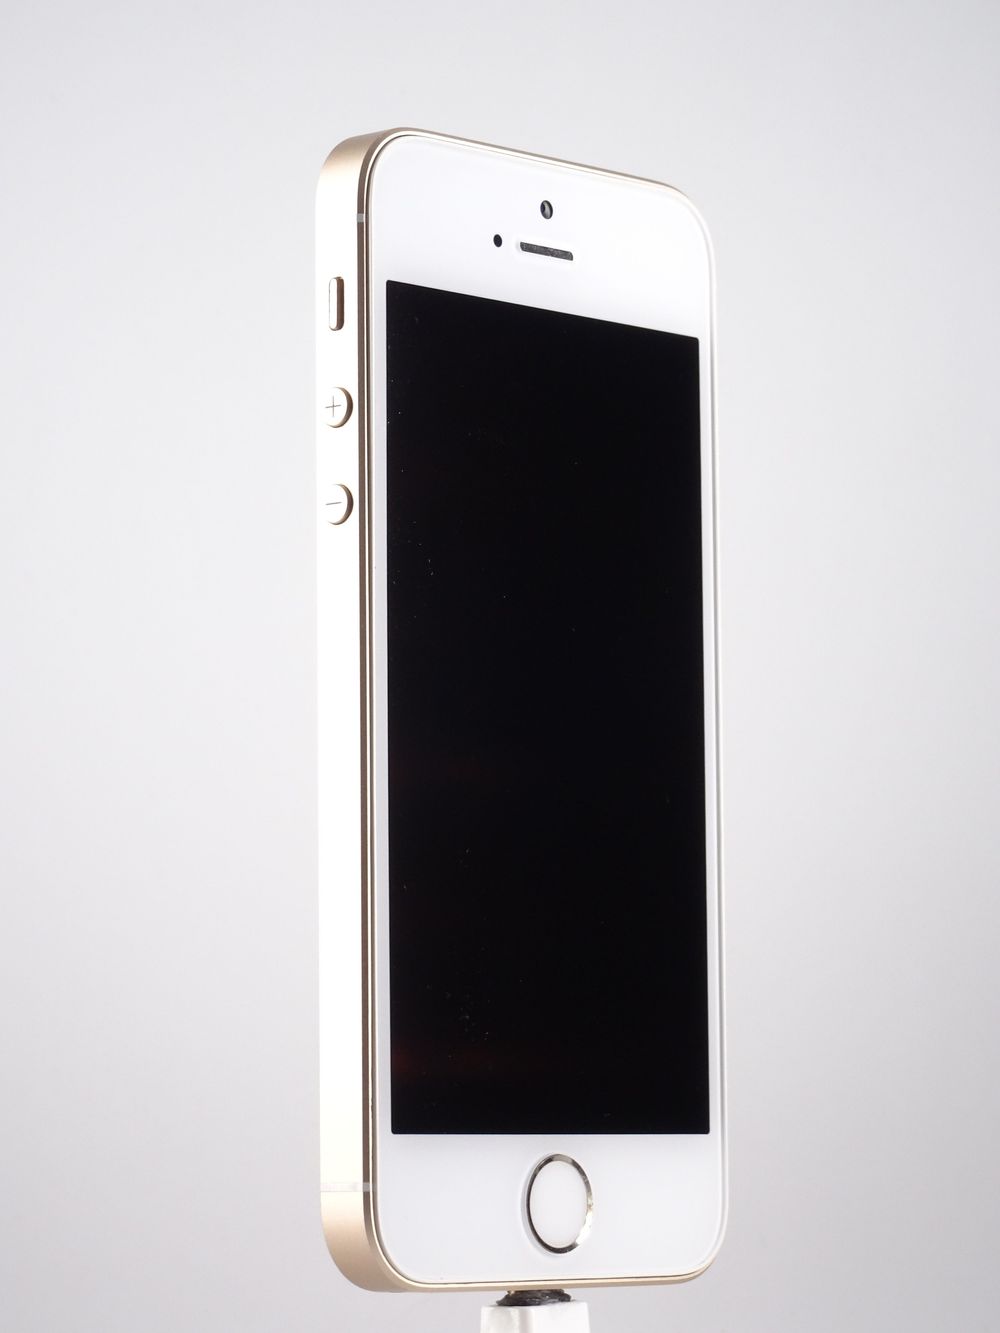 Мобилен телефон Apple, iPhone SE, 32 GB, Gold,  Като нов